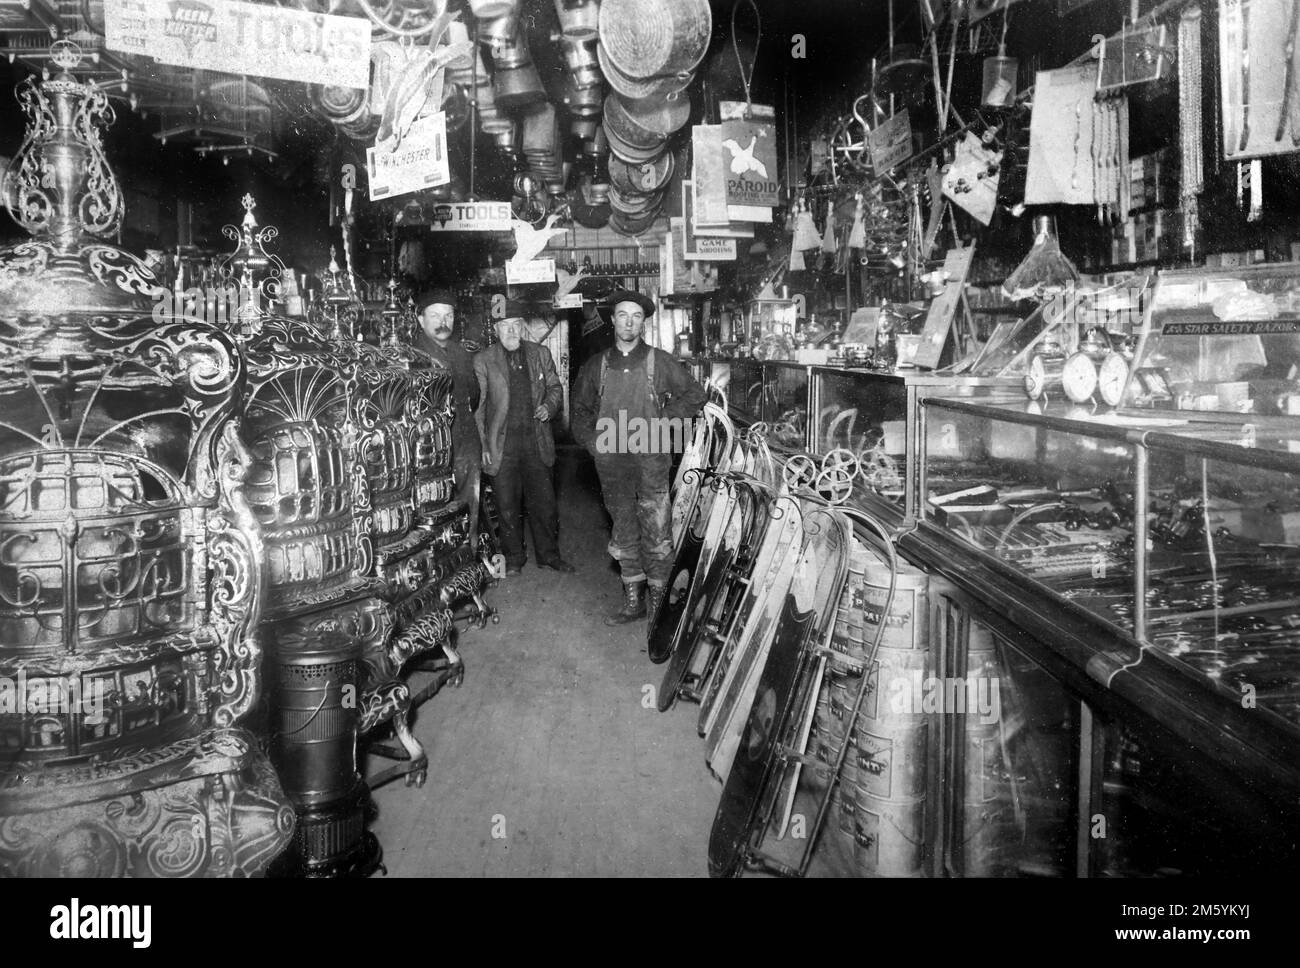 Una svolta del negozio di ferramenta del 20th° secolo nel Midwest degli Stati Uniti, ca. 1900. Foto Stock